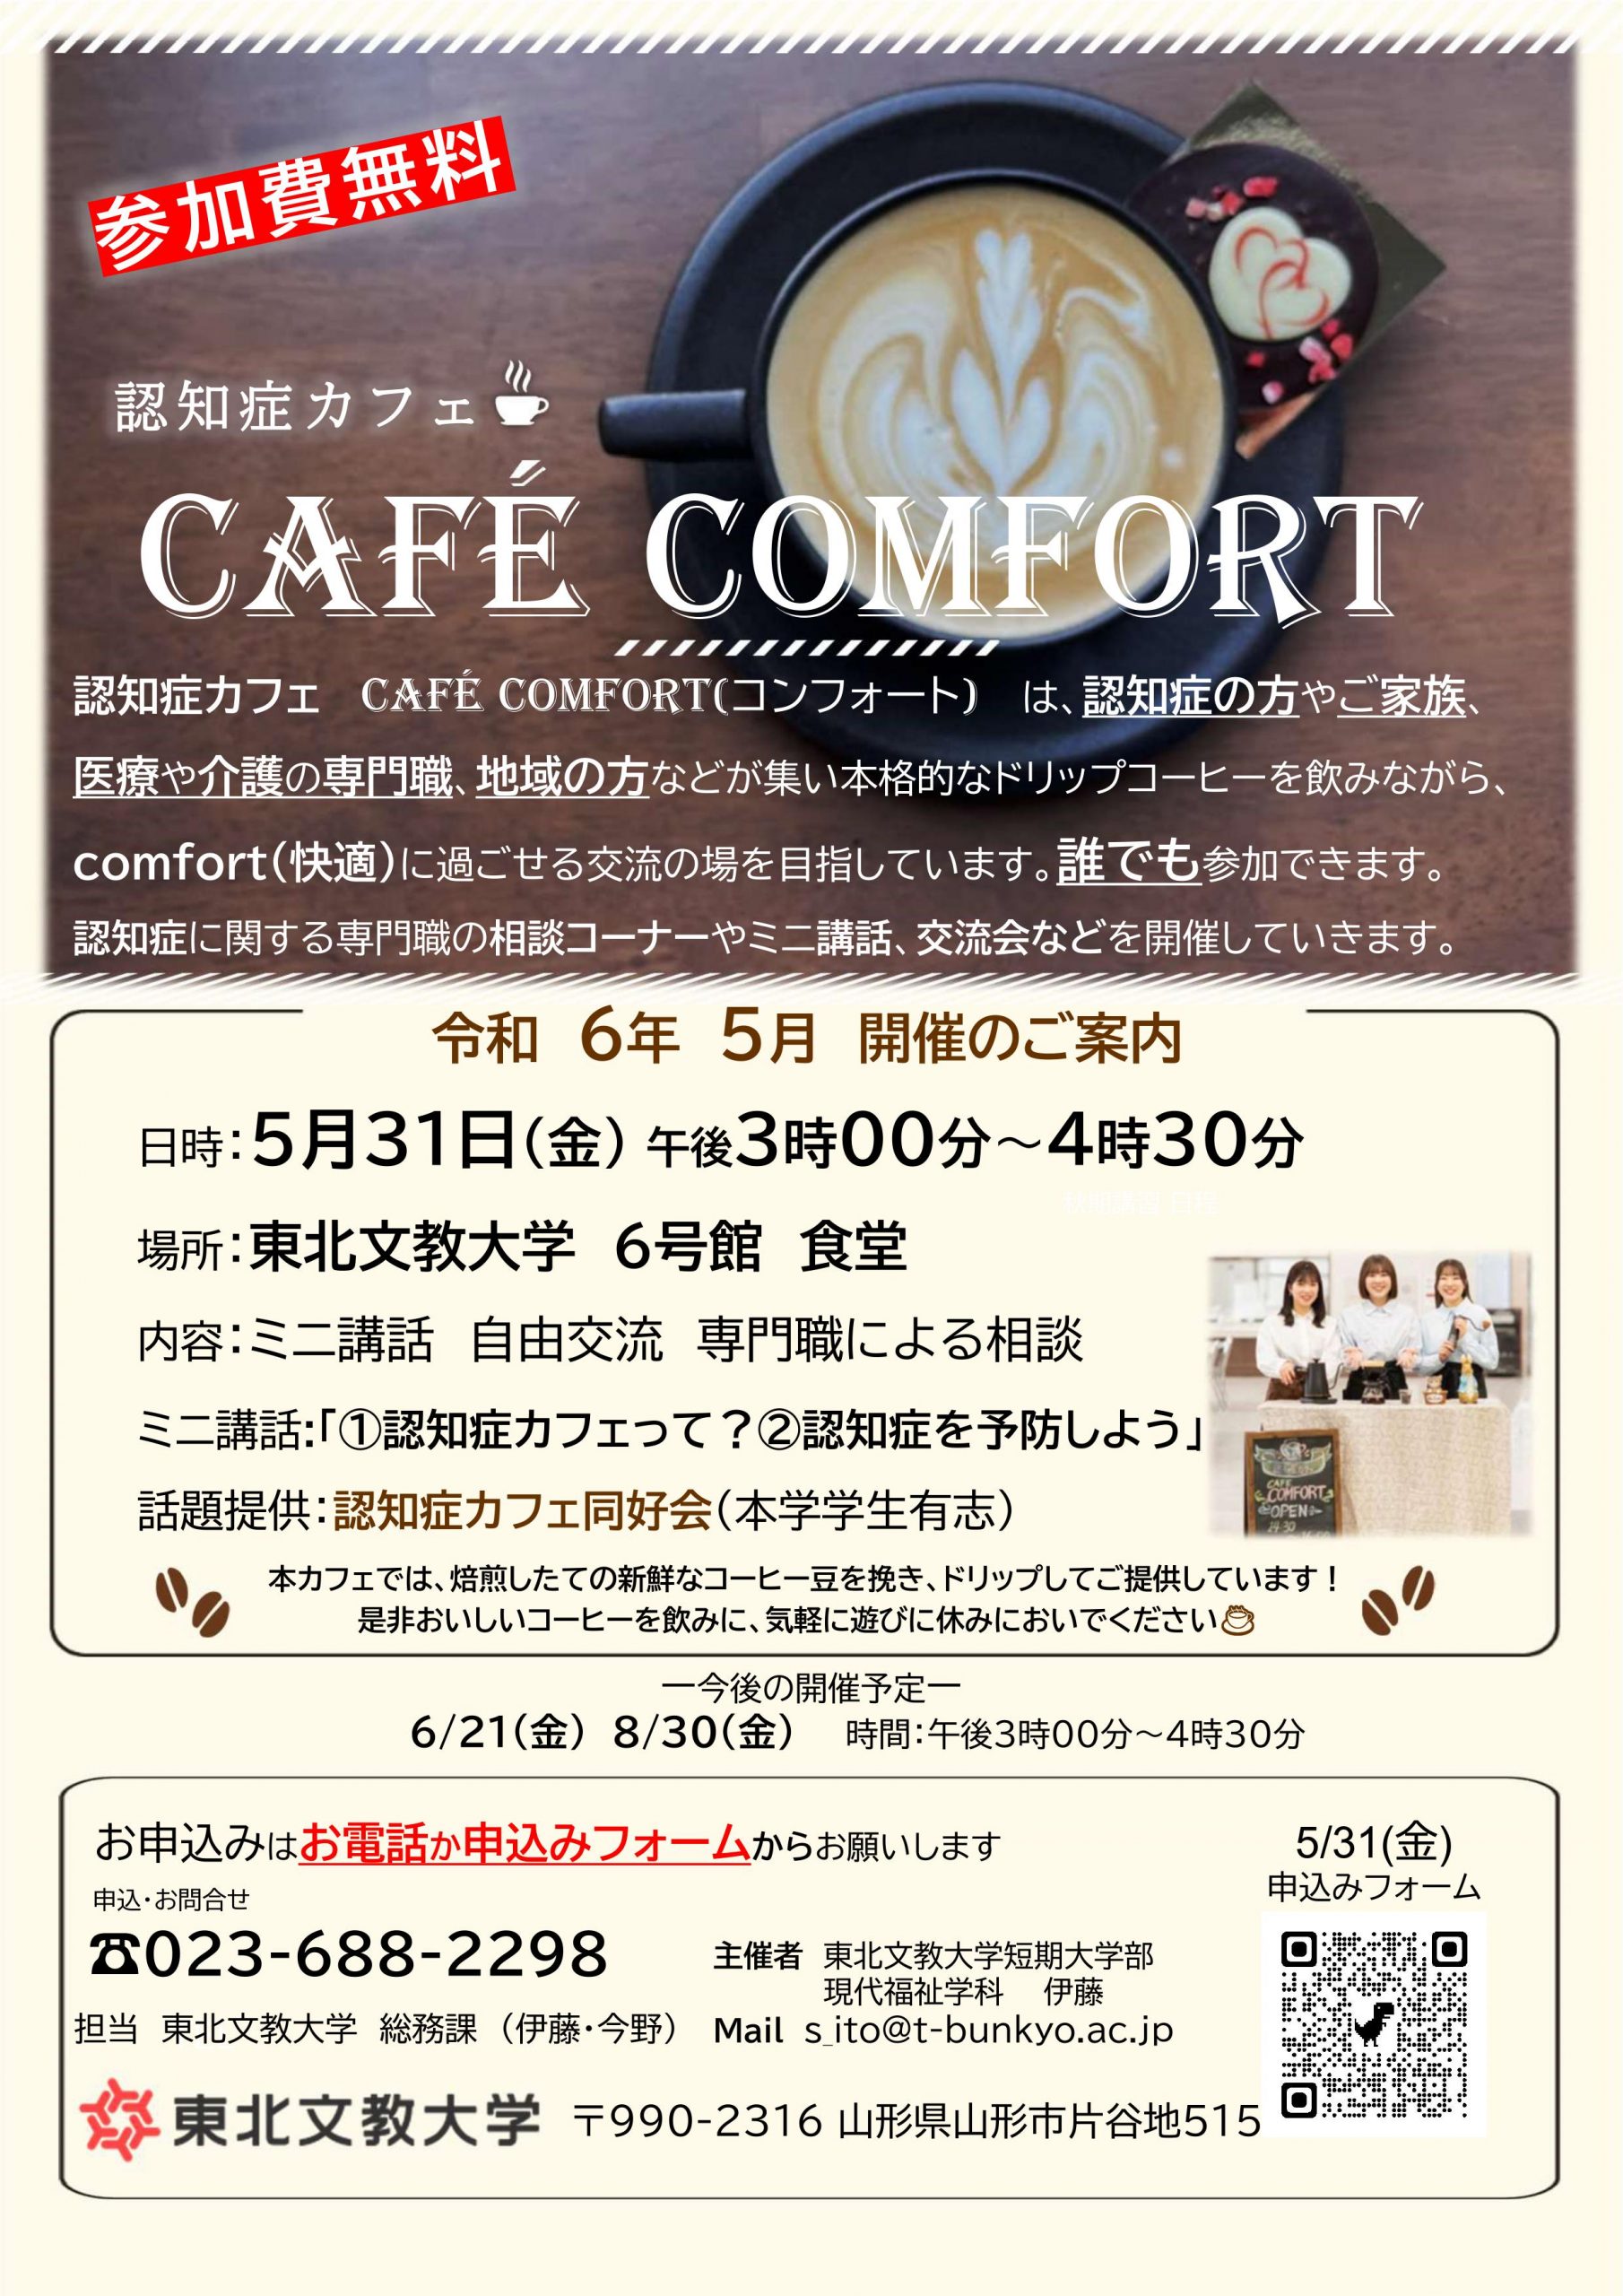 認知症カフェ「café comfort」5月開催のご案内